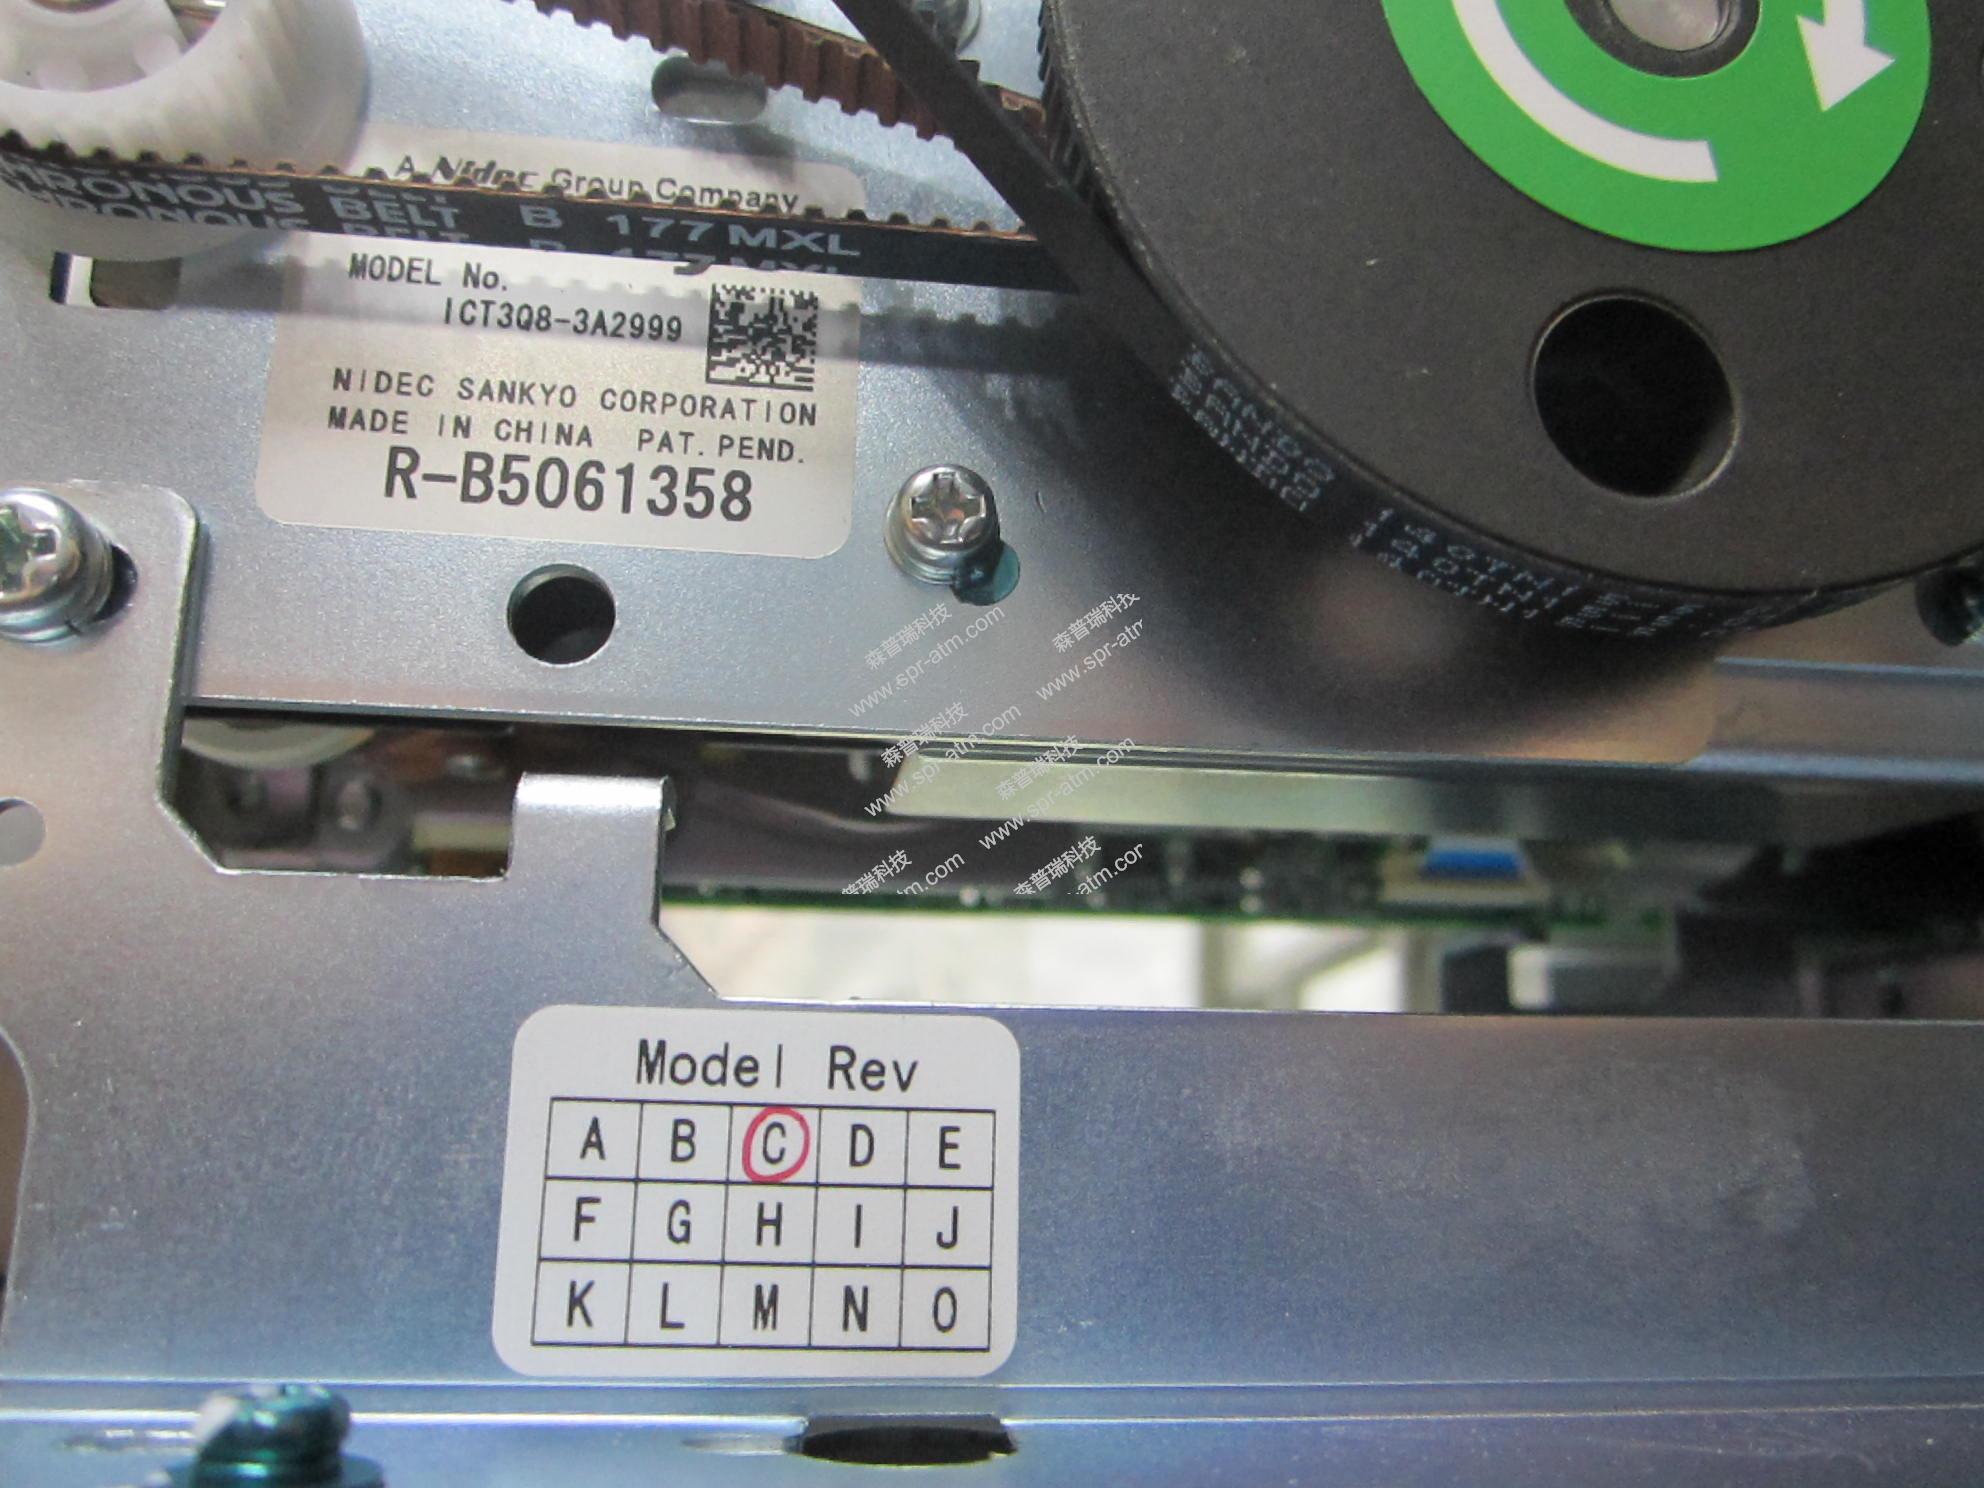 OKI 21SE 读卡器（ICT3Q8-3A2999）-ATM配件